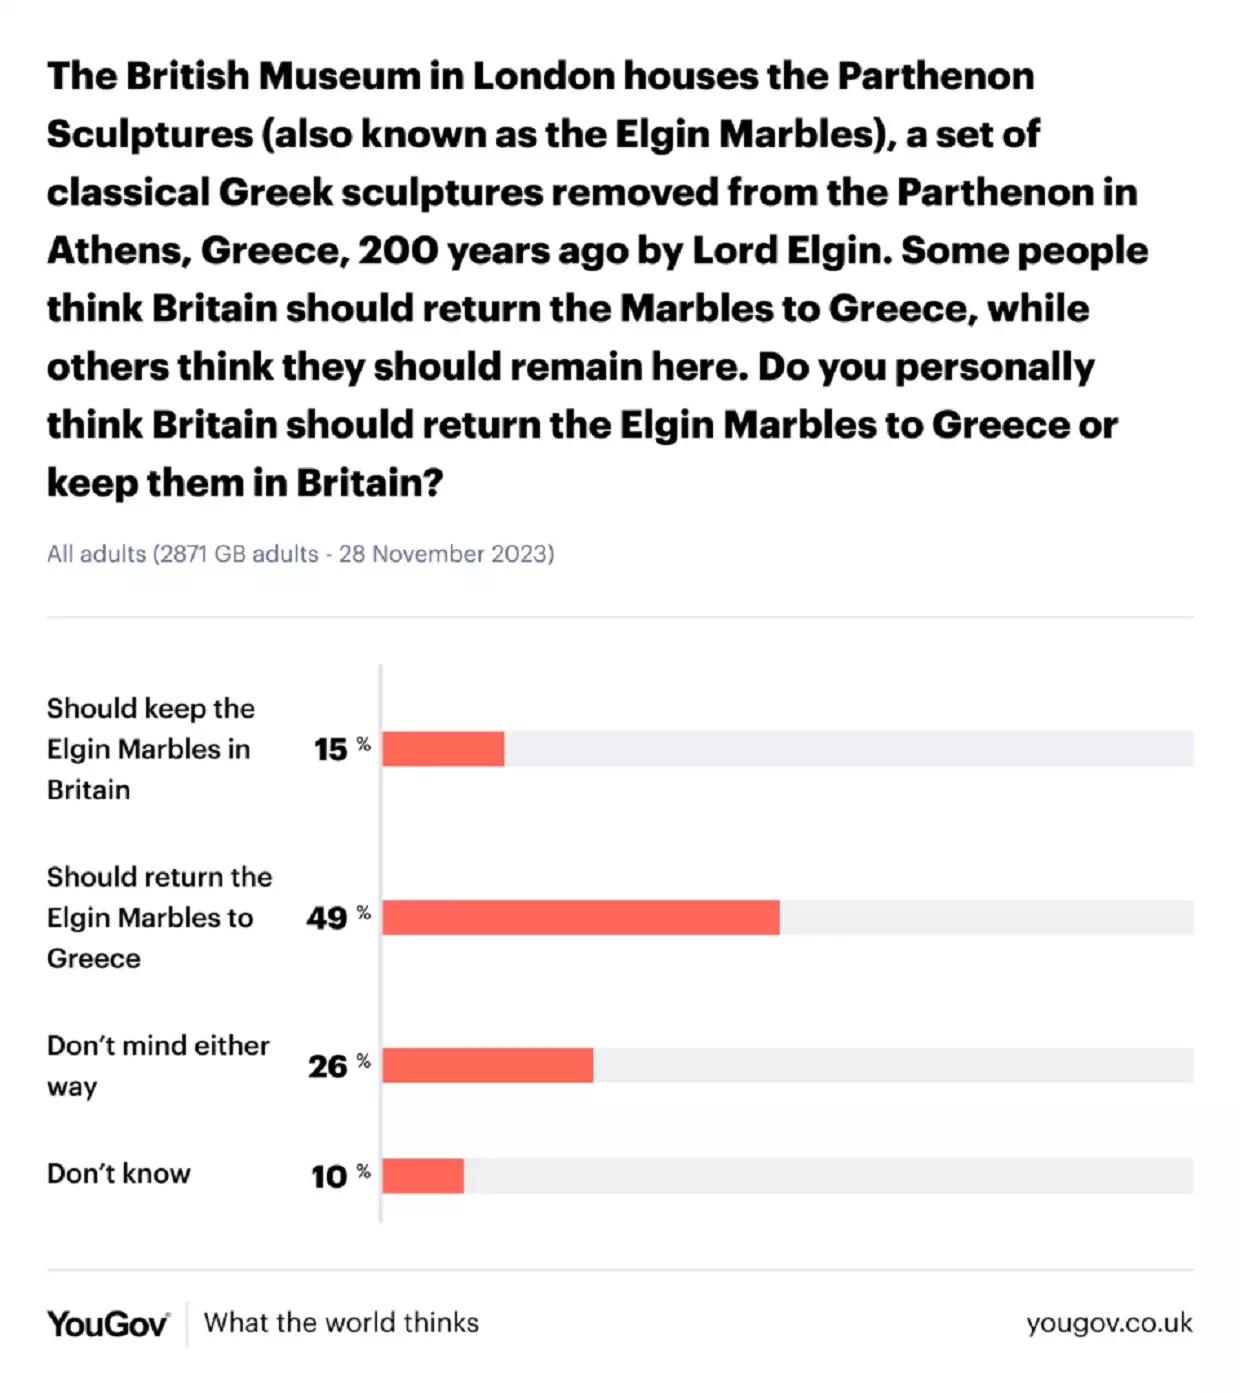 Ρίσι Σούνακ: Λάθος η απόφαση να ακυρώσει τη συνάντηση με Μητσοτάκη λέει το 66% των Βρετανών σύμφωνα με δημοσκόπηση